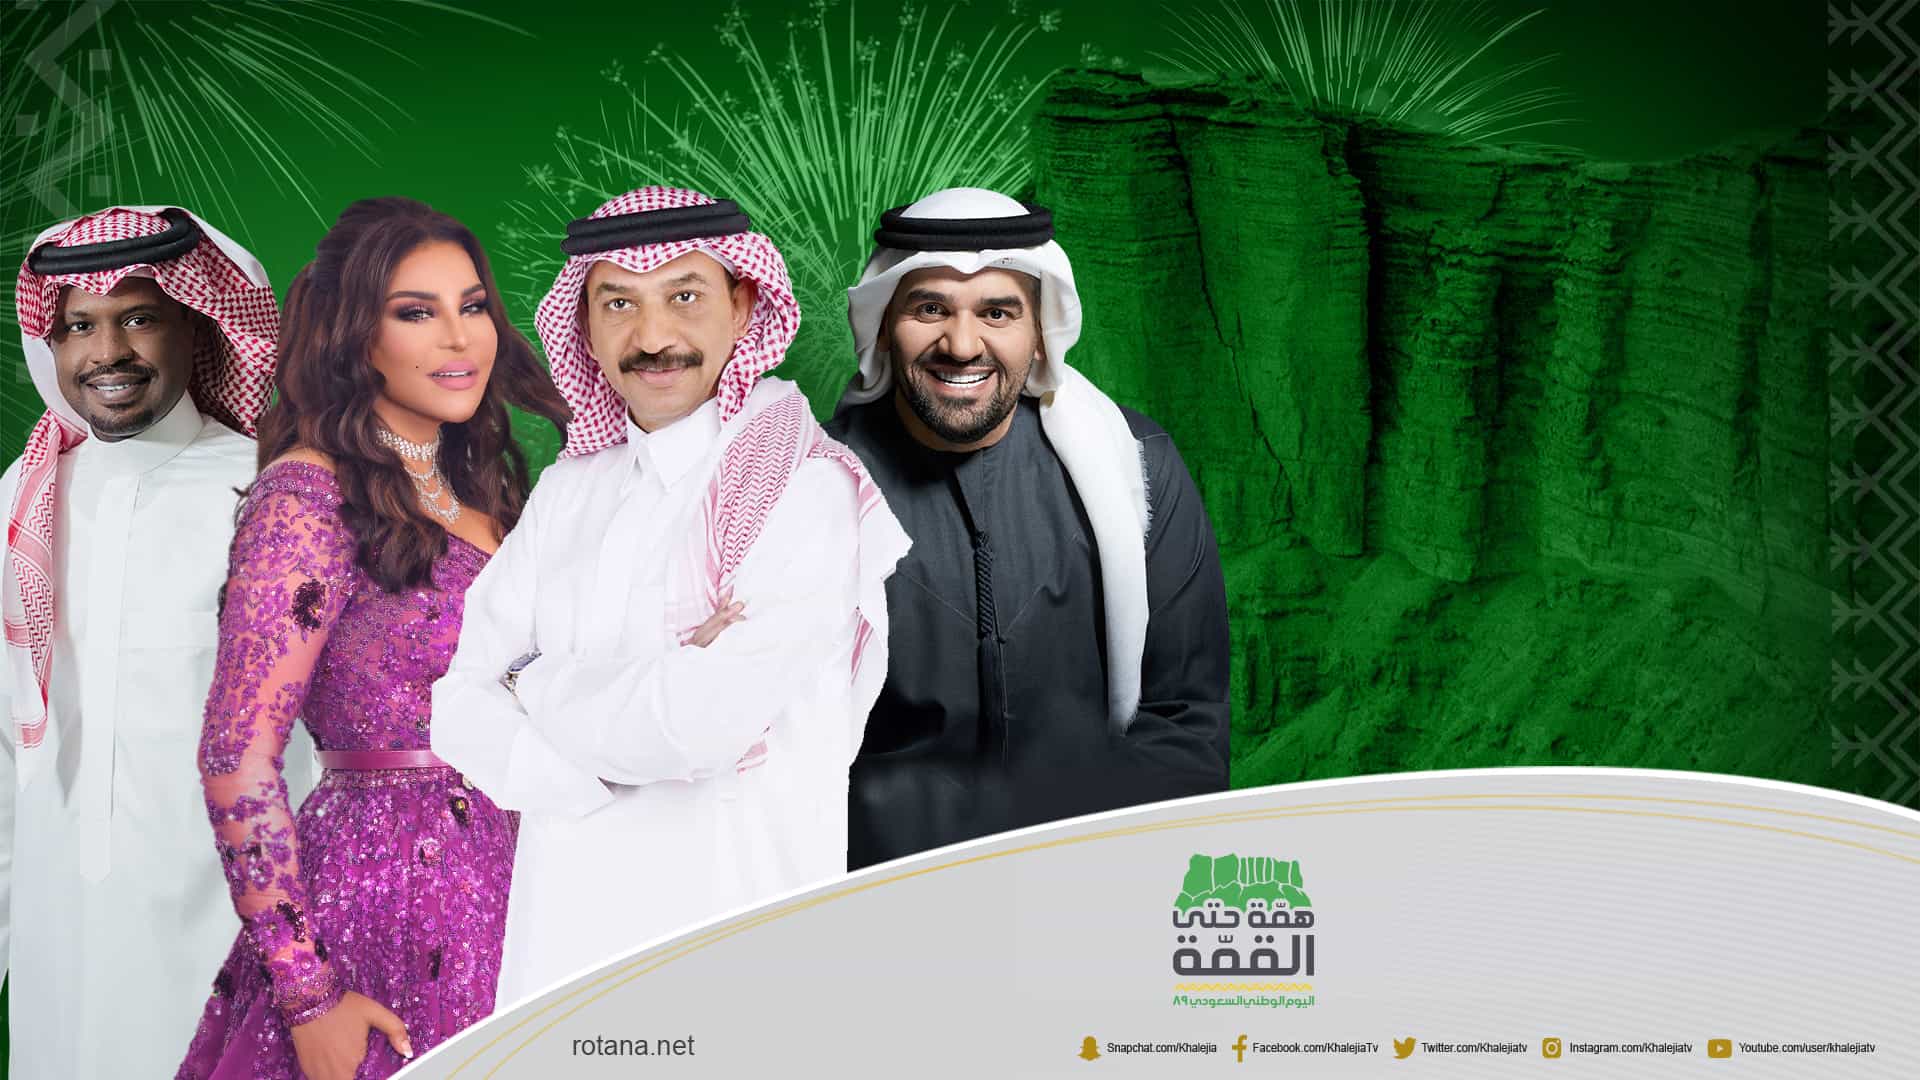 ختام سهرات اليوم الوطني السعودي بحفل طربي استثنائي في الرياض